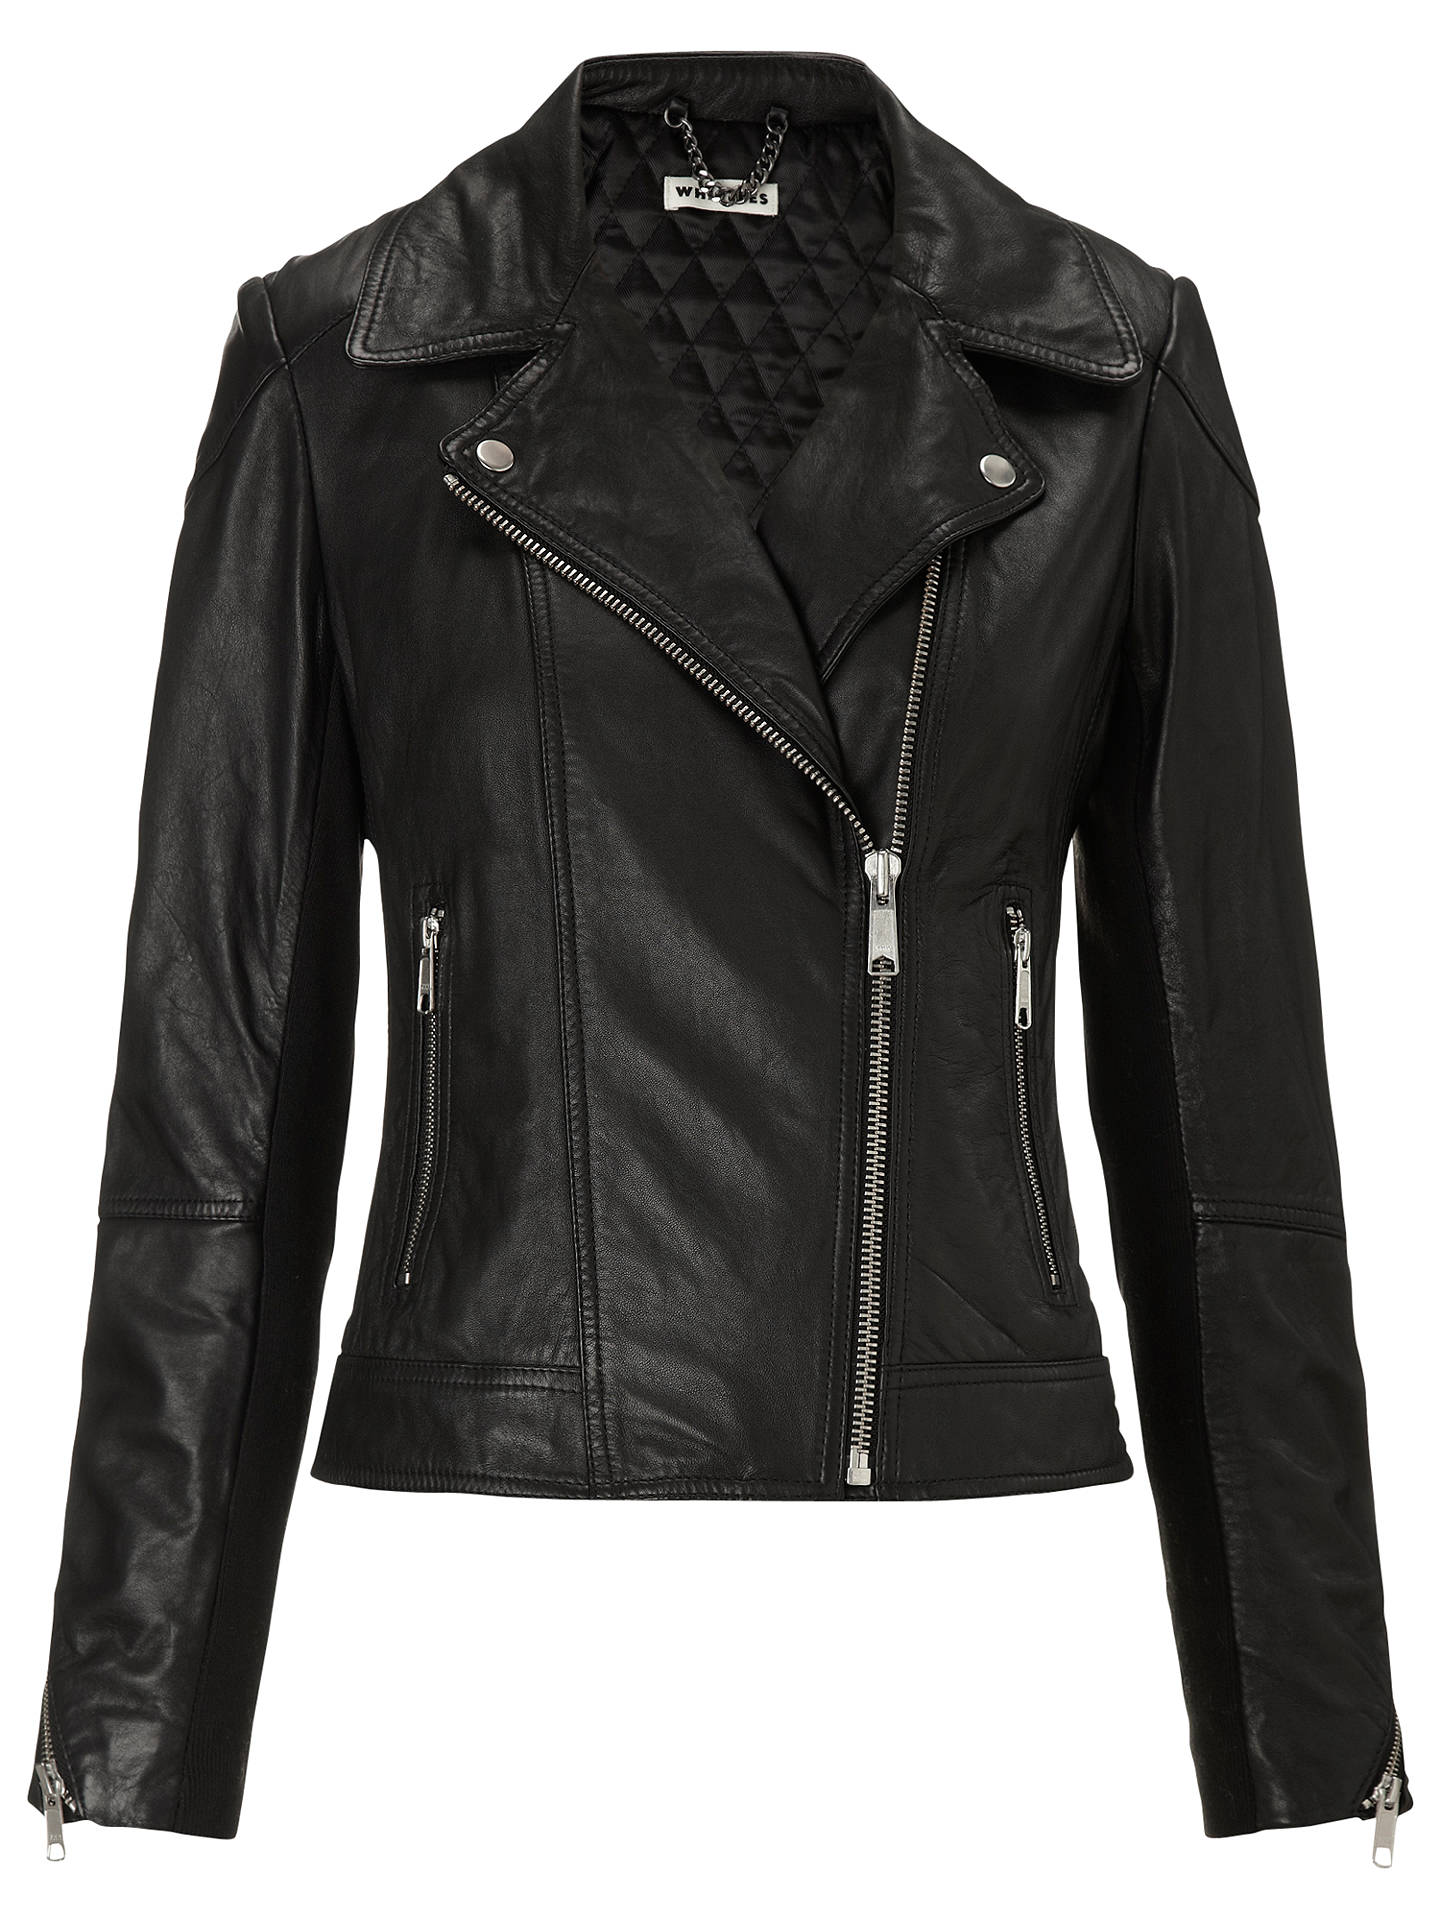 Whistles Lita Leather Jacket at John Lewis & Partners